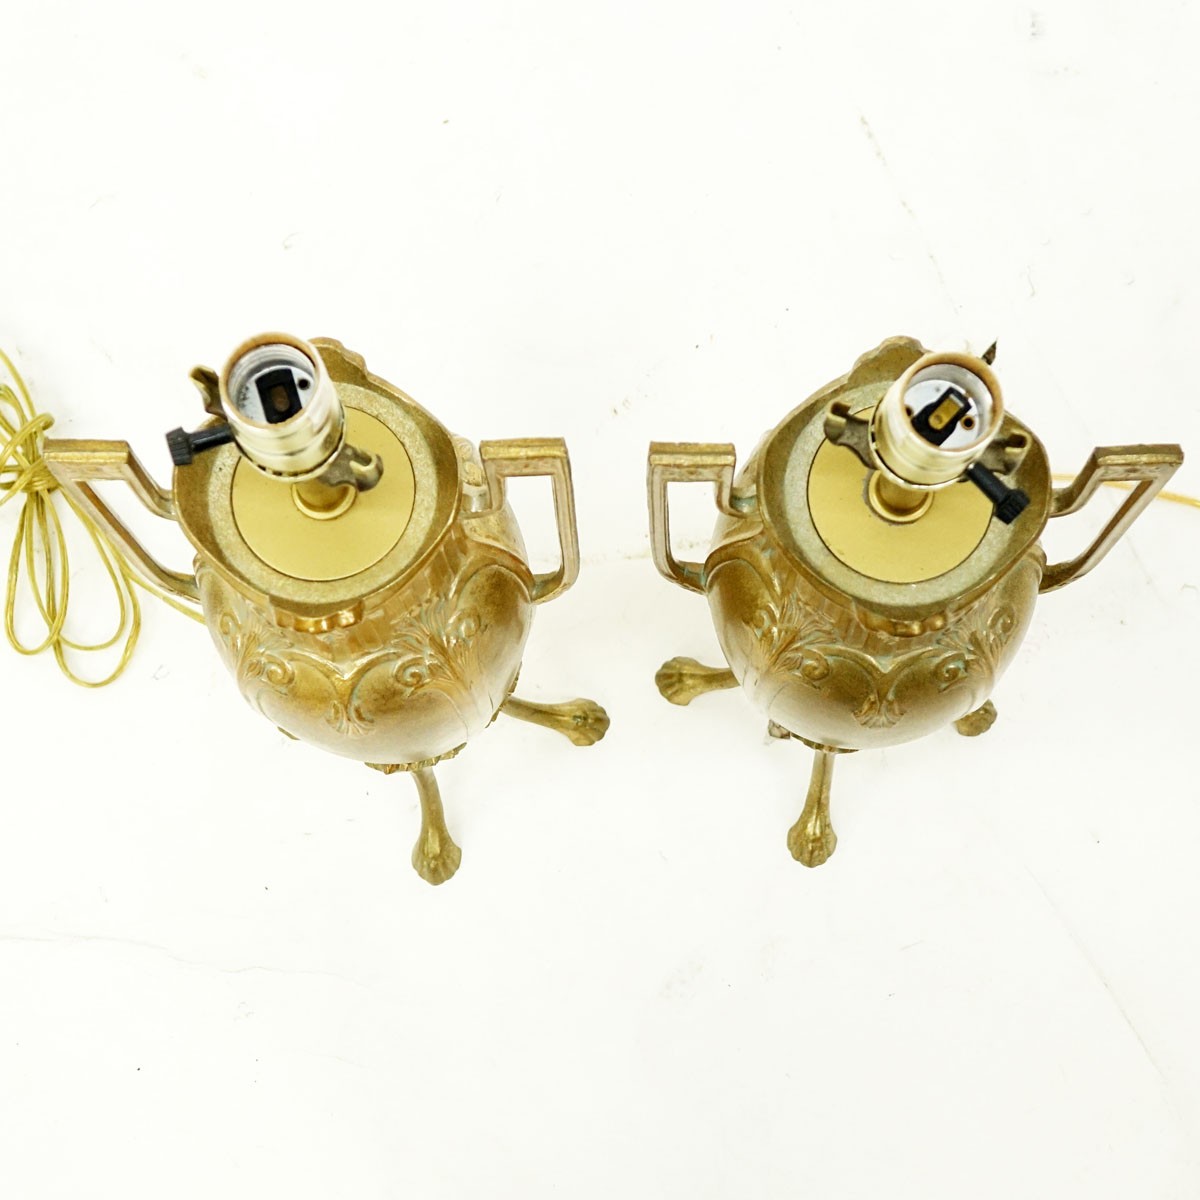 Pair of Art Nouveau Style Gilt Brass Lamps. Good condition.